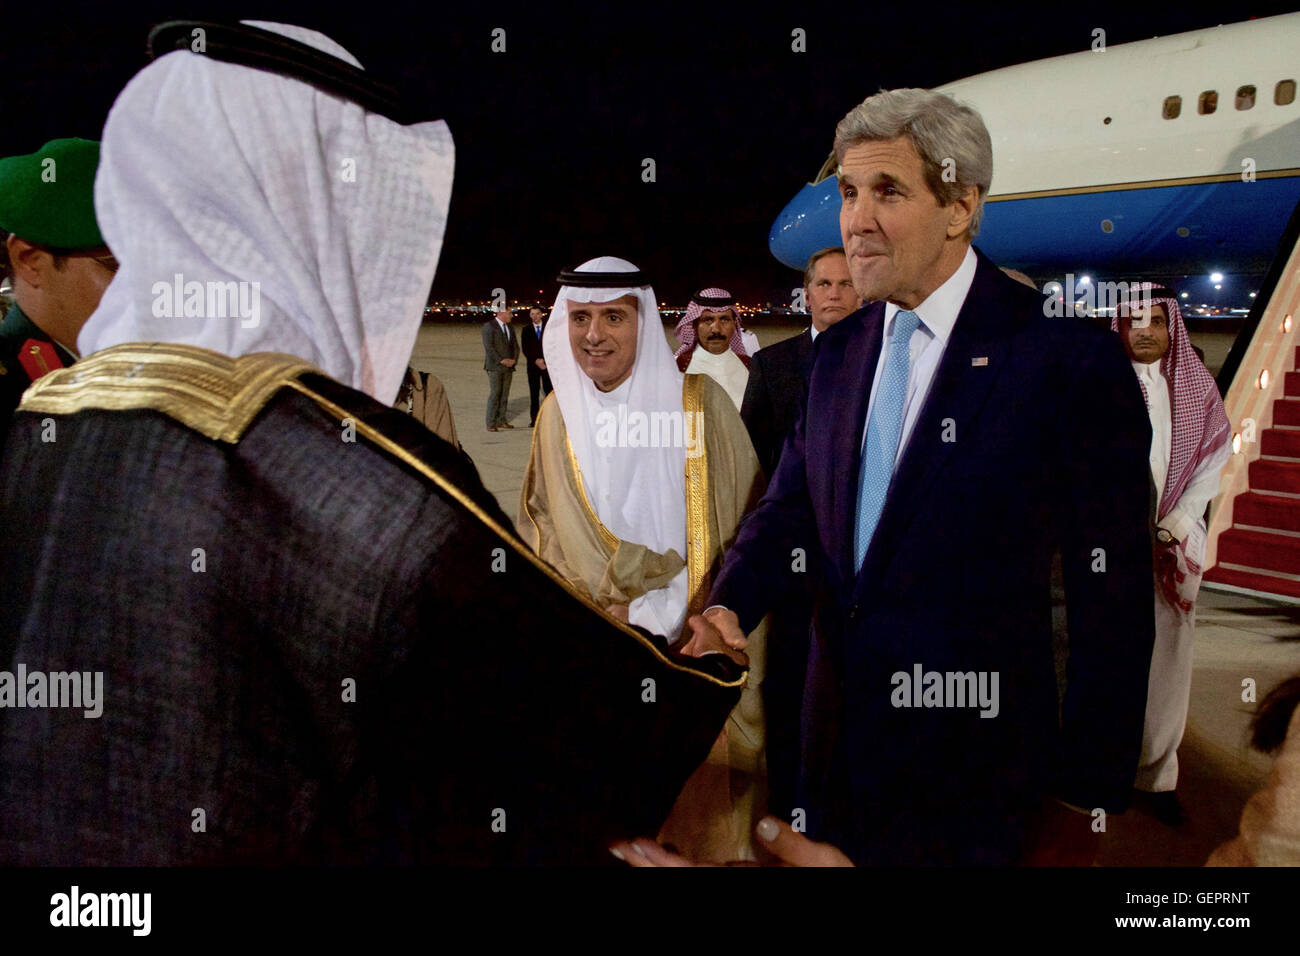 Il segretario John Kerry saluta Arabia Saudita il Ministro degli Esteri Adel al-Jubeir e Arabia funzionari all'Aeroporto Internazionale di Jeddah. Foto Stock